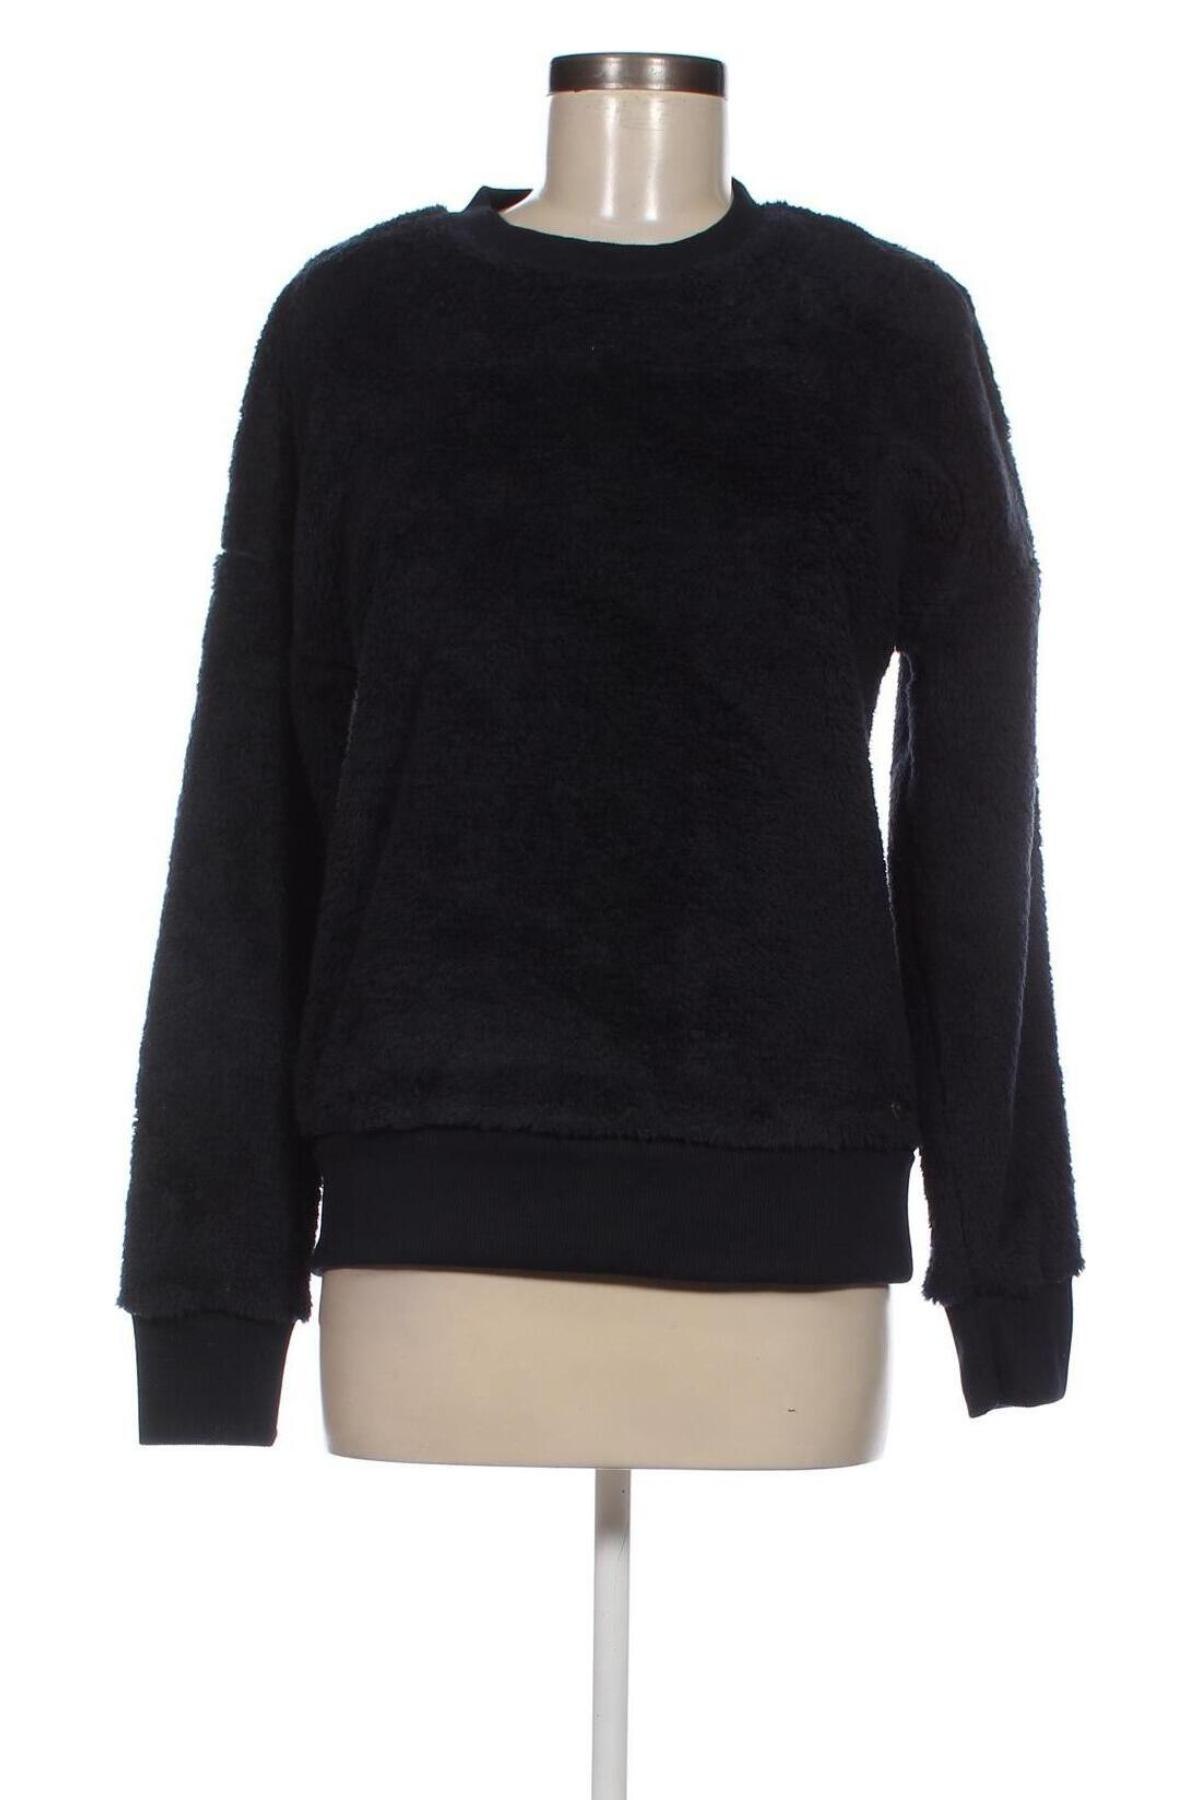 Γυναικεία μπλούζα Oxmo, Μέγεθος M, Χρώμα Μπλέ, Τιμή 7,99 €